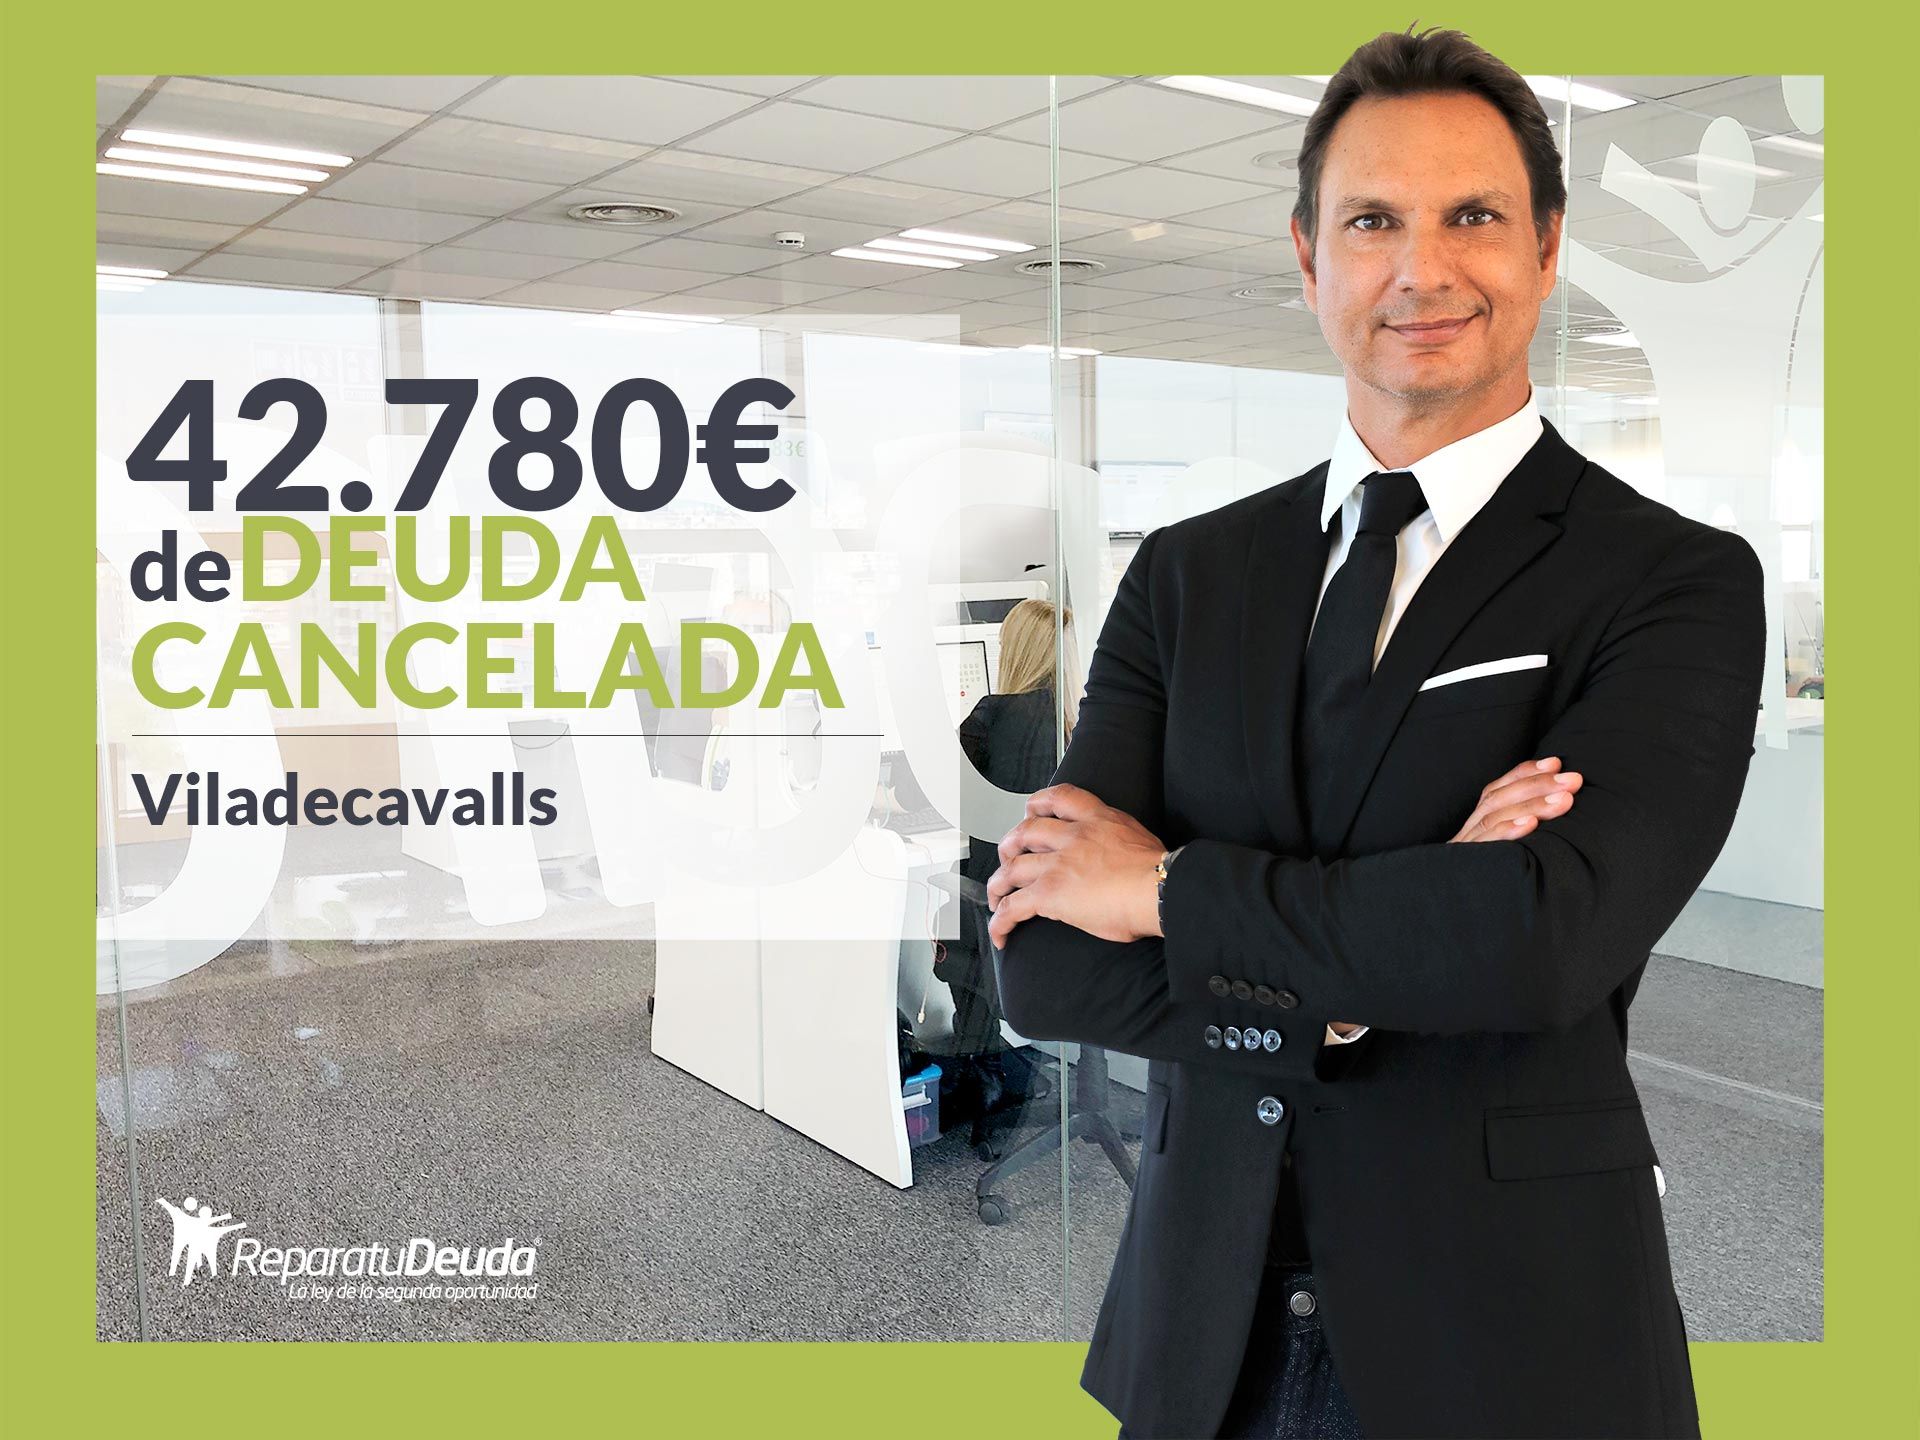 Repara tu Deuda Abogados cancela 42.780 ? en Viladecavalls (Barcelona) con la Ley de Segunda Oportunidad